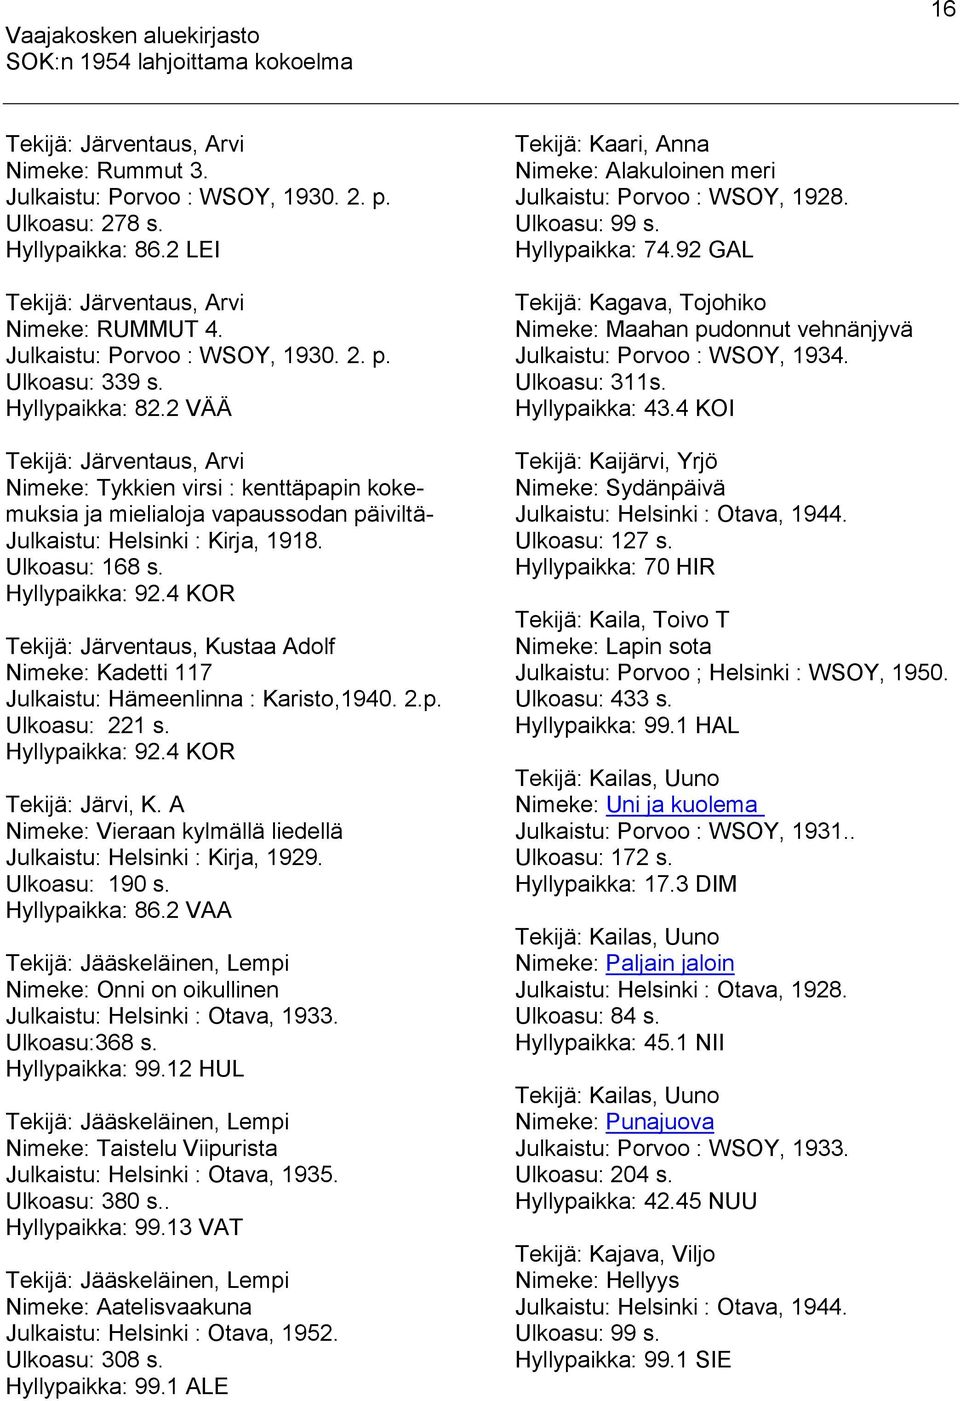 4 KOR Tekijä: Järventaus, Kustaa Adolf Nimeke: Kadetti 117 Julkaistu: Hämeenlinna : Karisto,1940. 2.p. Ulkoasu: 221 s. Hyllypaikka: 92.4 KOR Tekijä: Järvi, K.